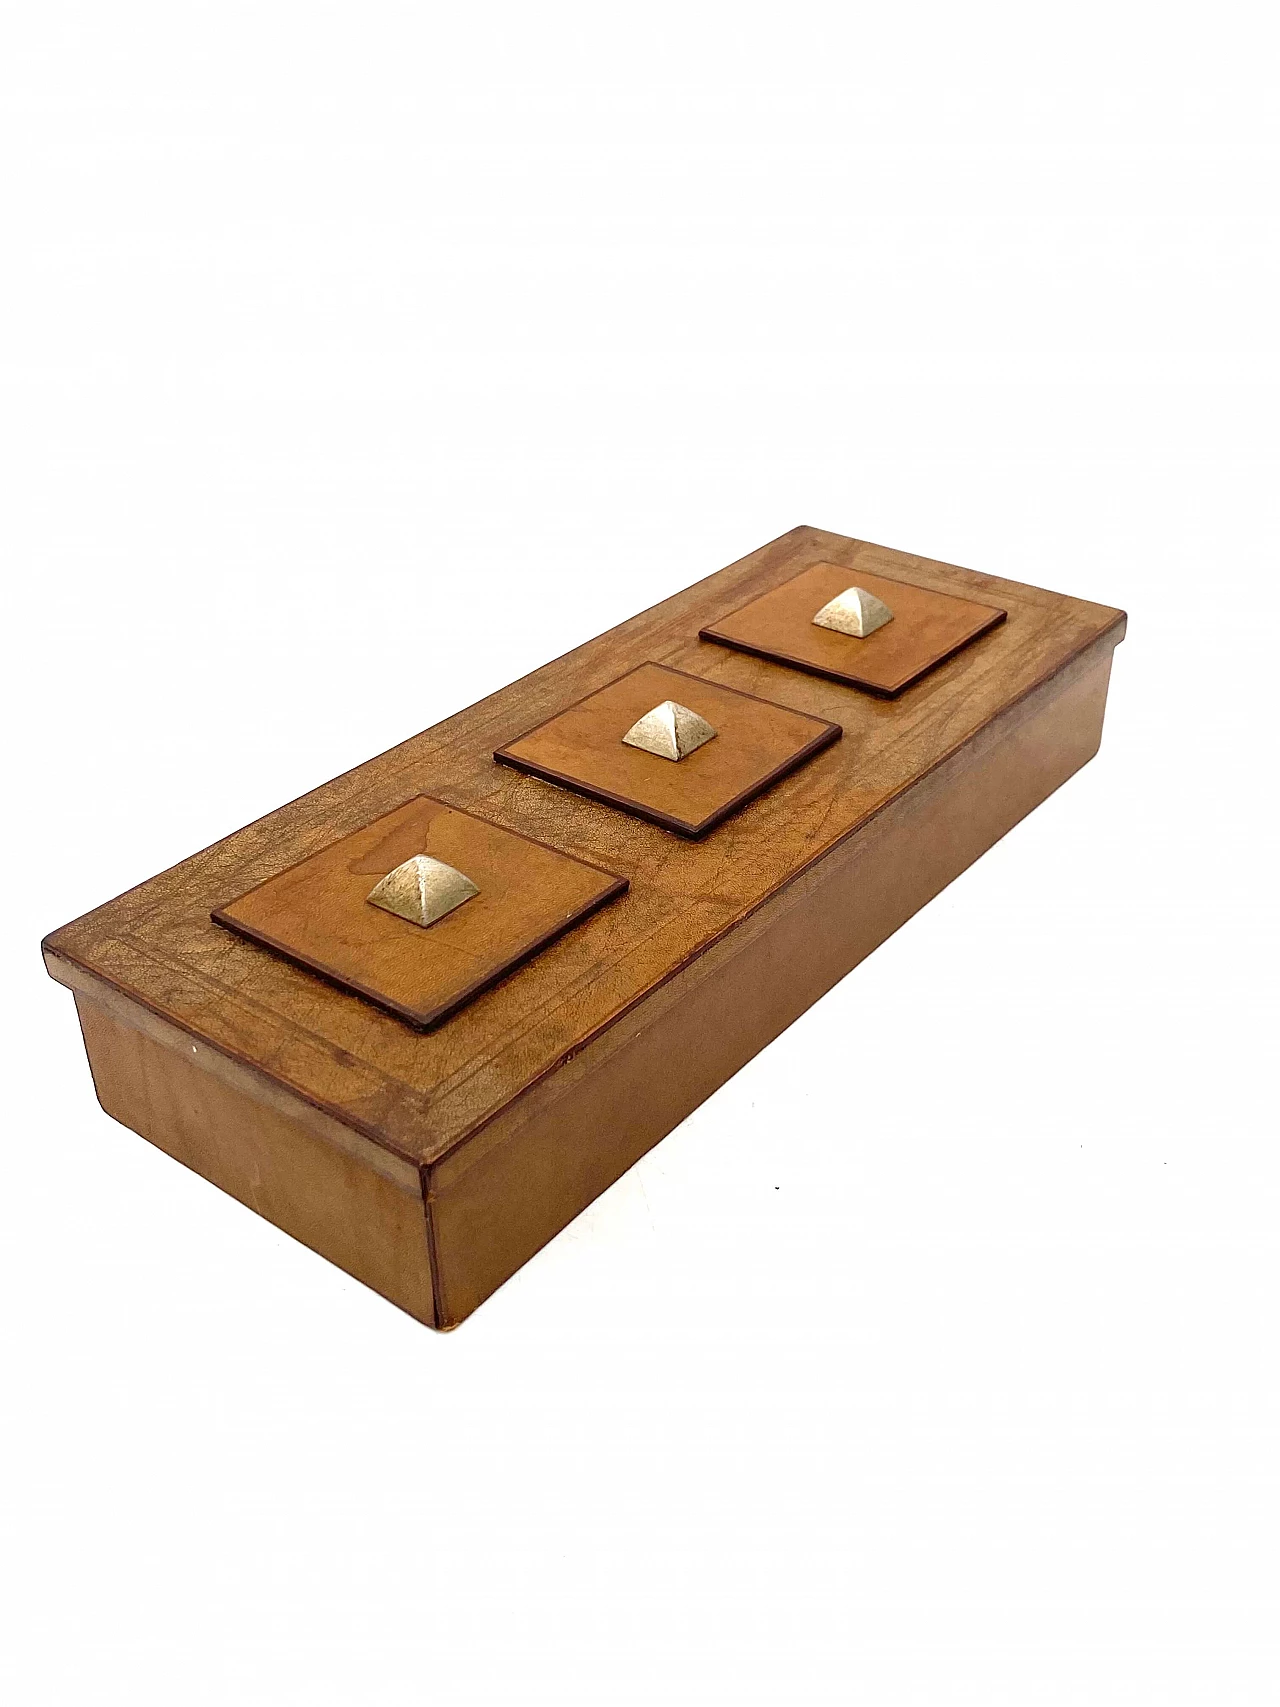 Posacenere, accendino e scatola in legno, pergamena e ottone, anni '50 19